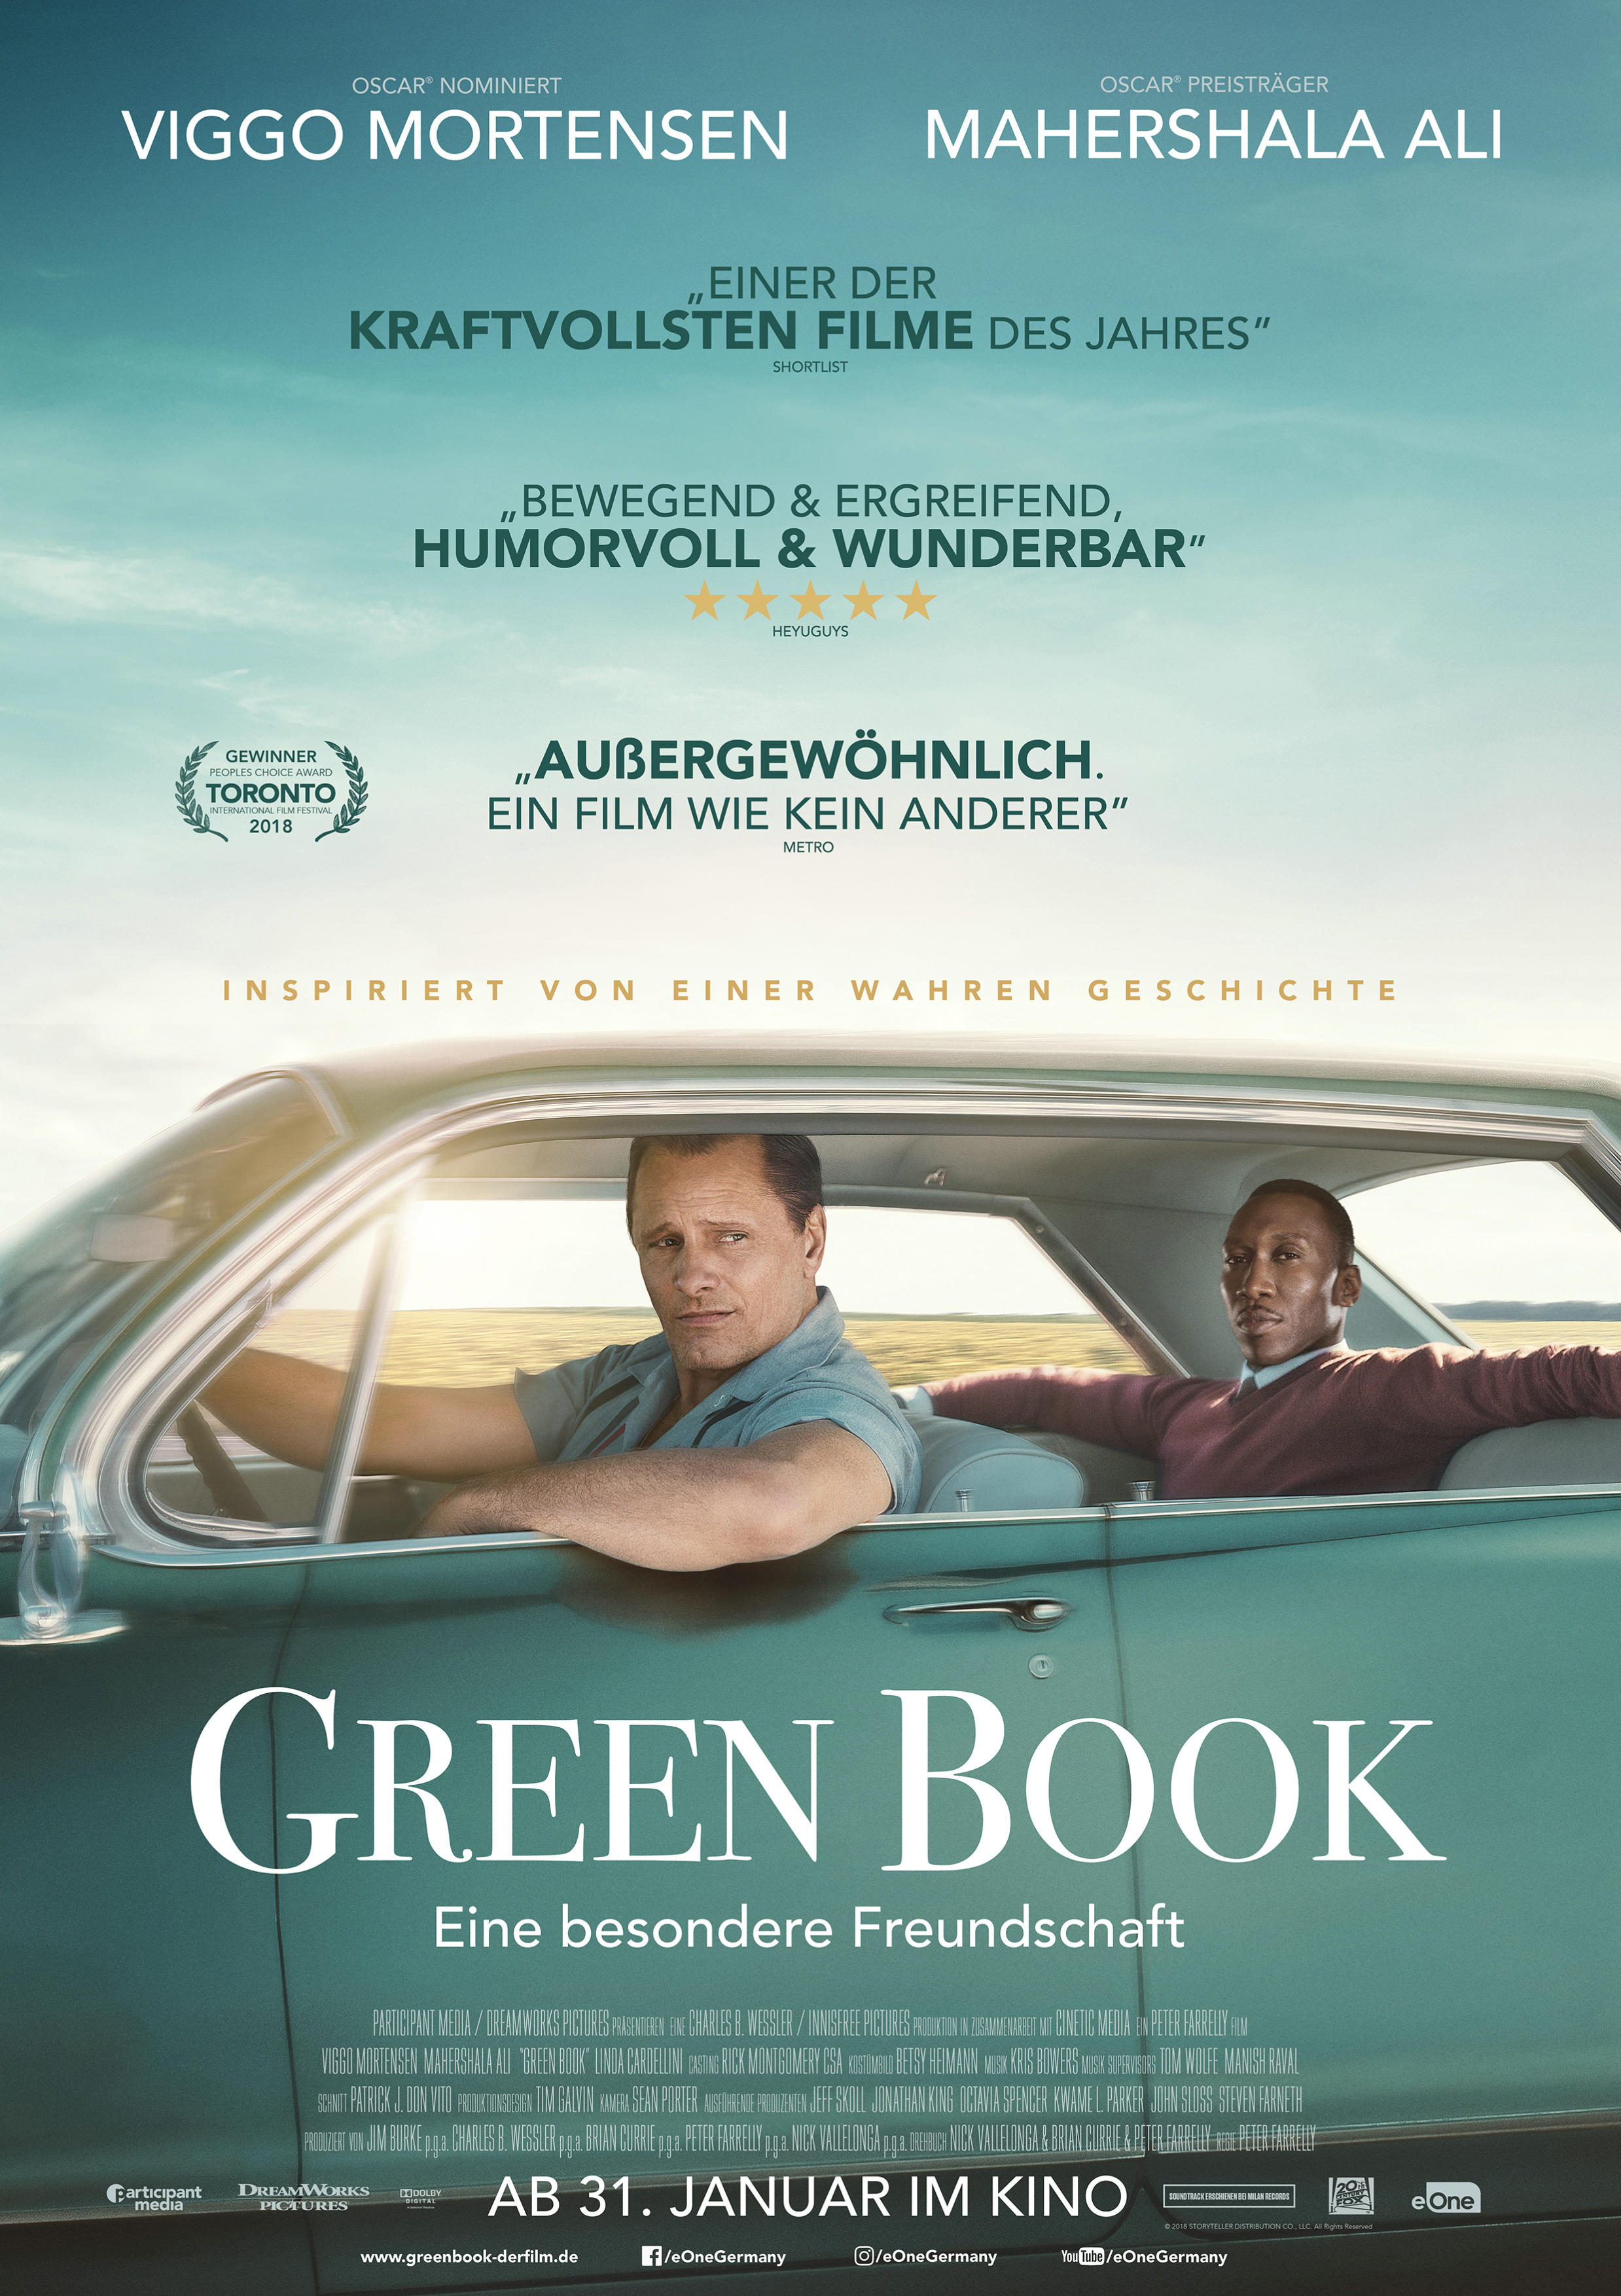 دانلود فیلم Green Book 2018